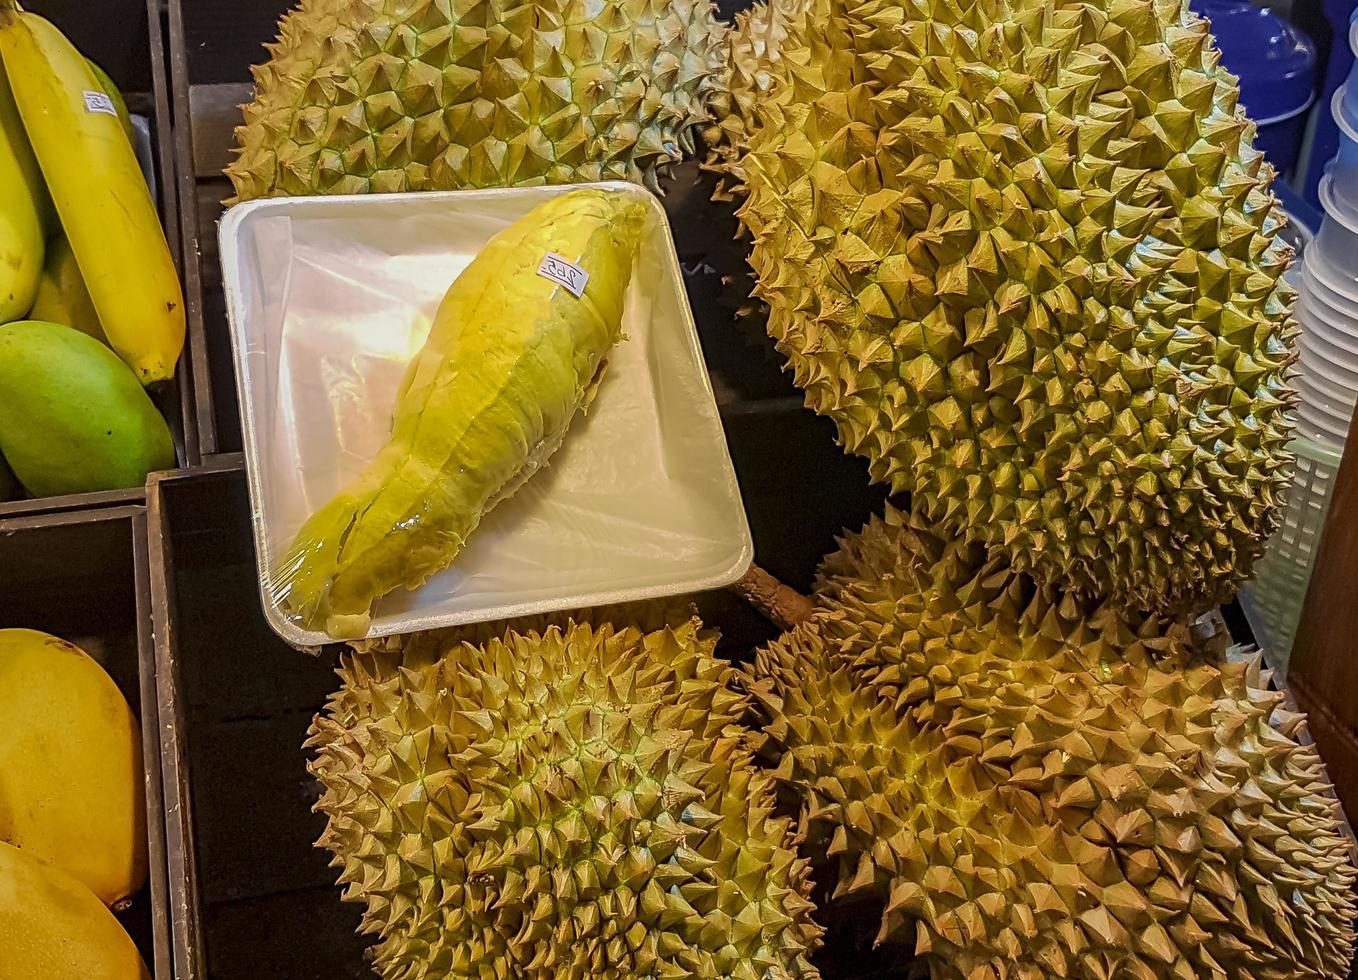 malolientes frutas durian grandes mercado nocturno tailandés comida callejera bangkok. foto